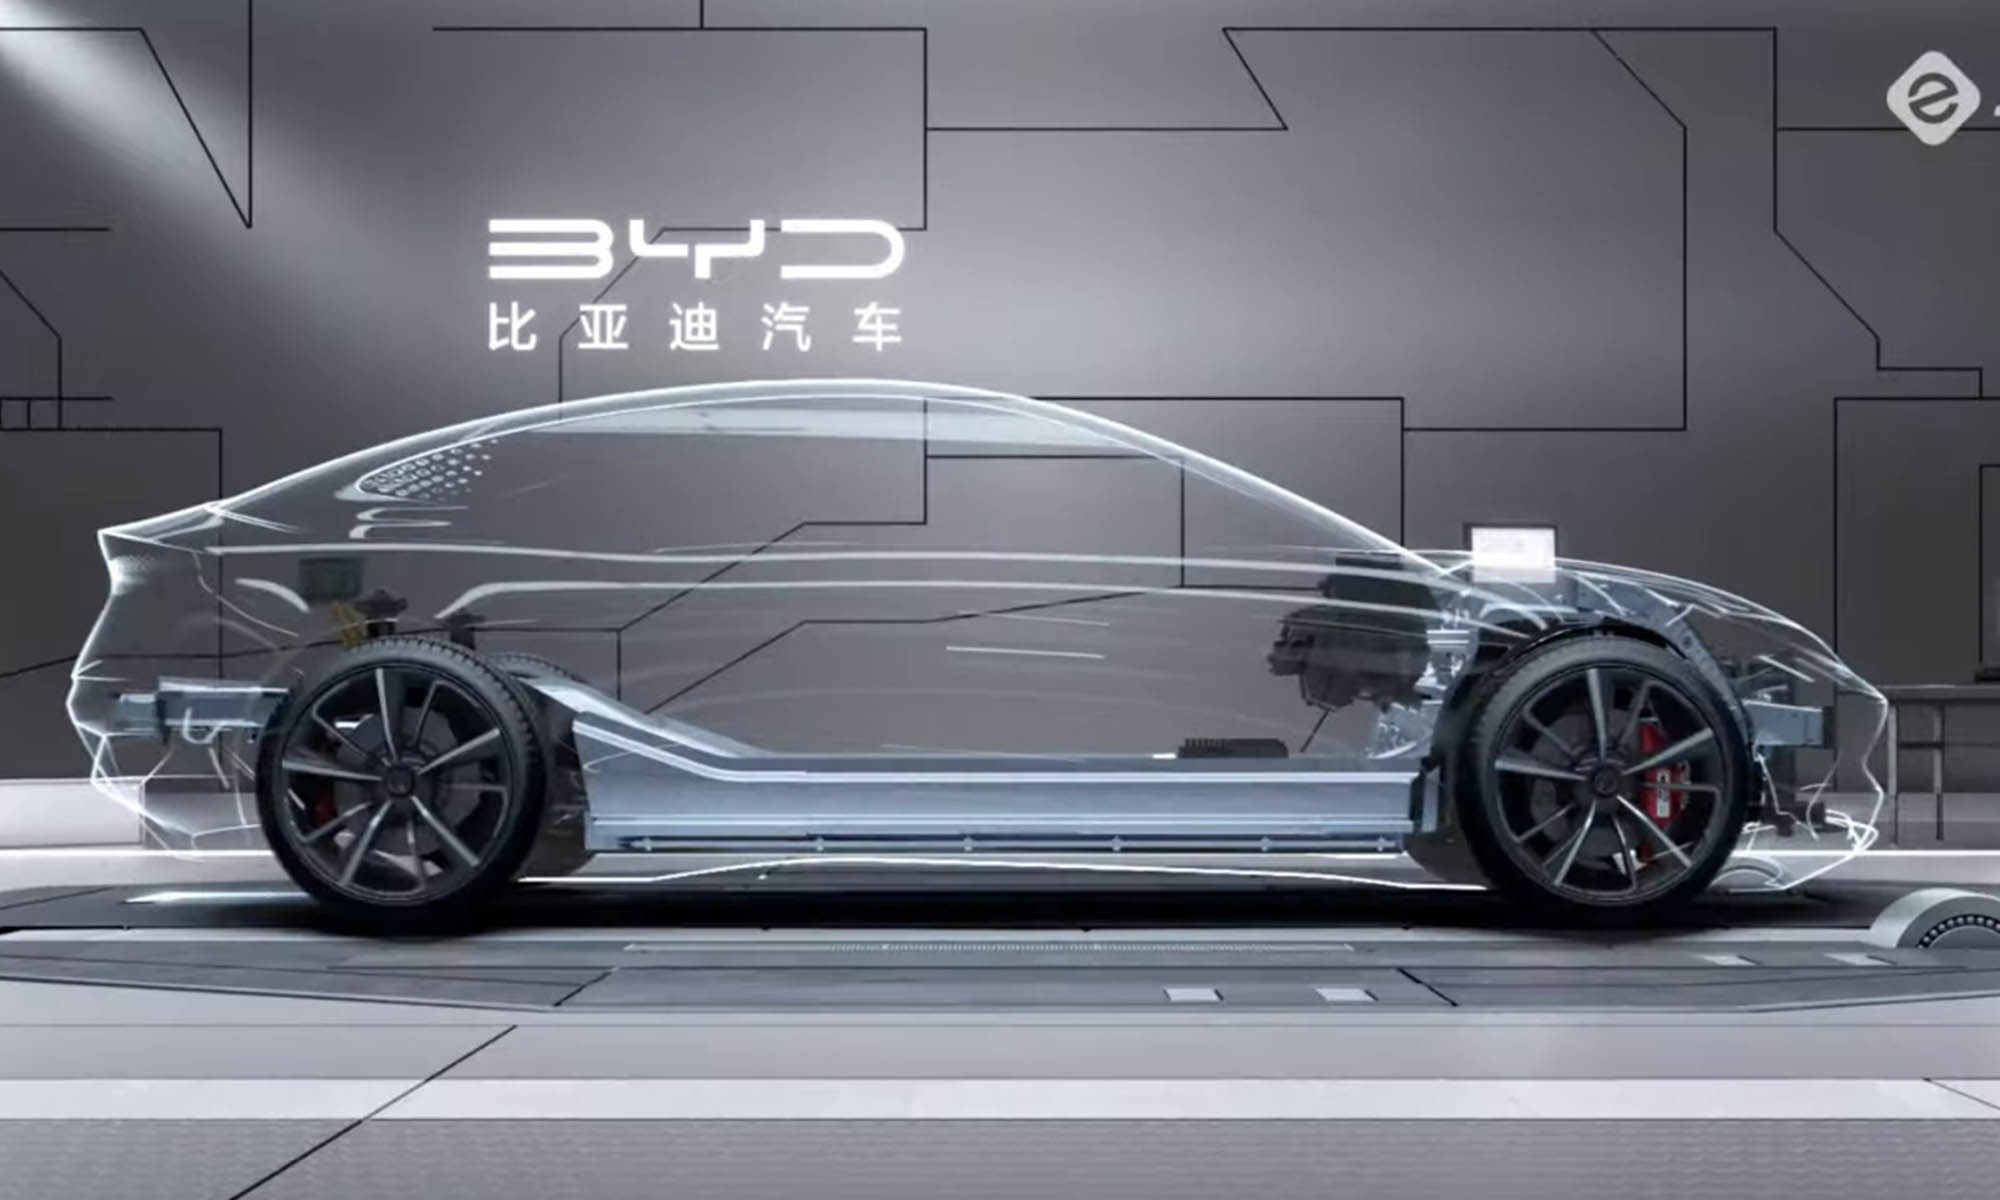 BYD añadirá una nueva tecnología a su plataforma dedicada a vehículos eléctricos.